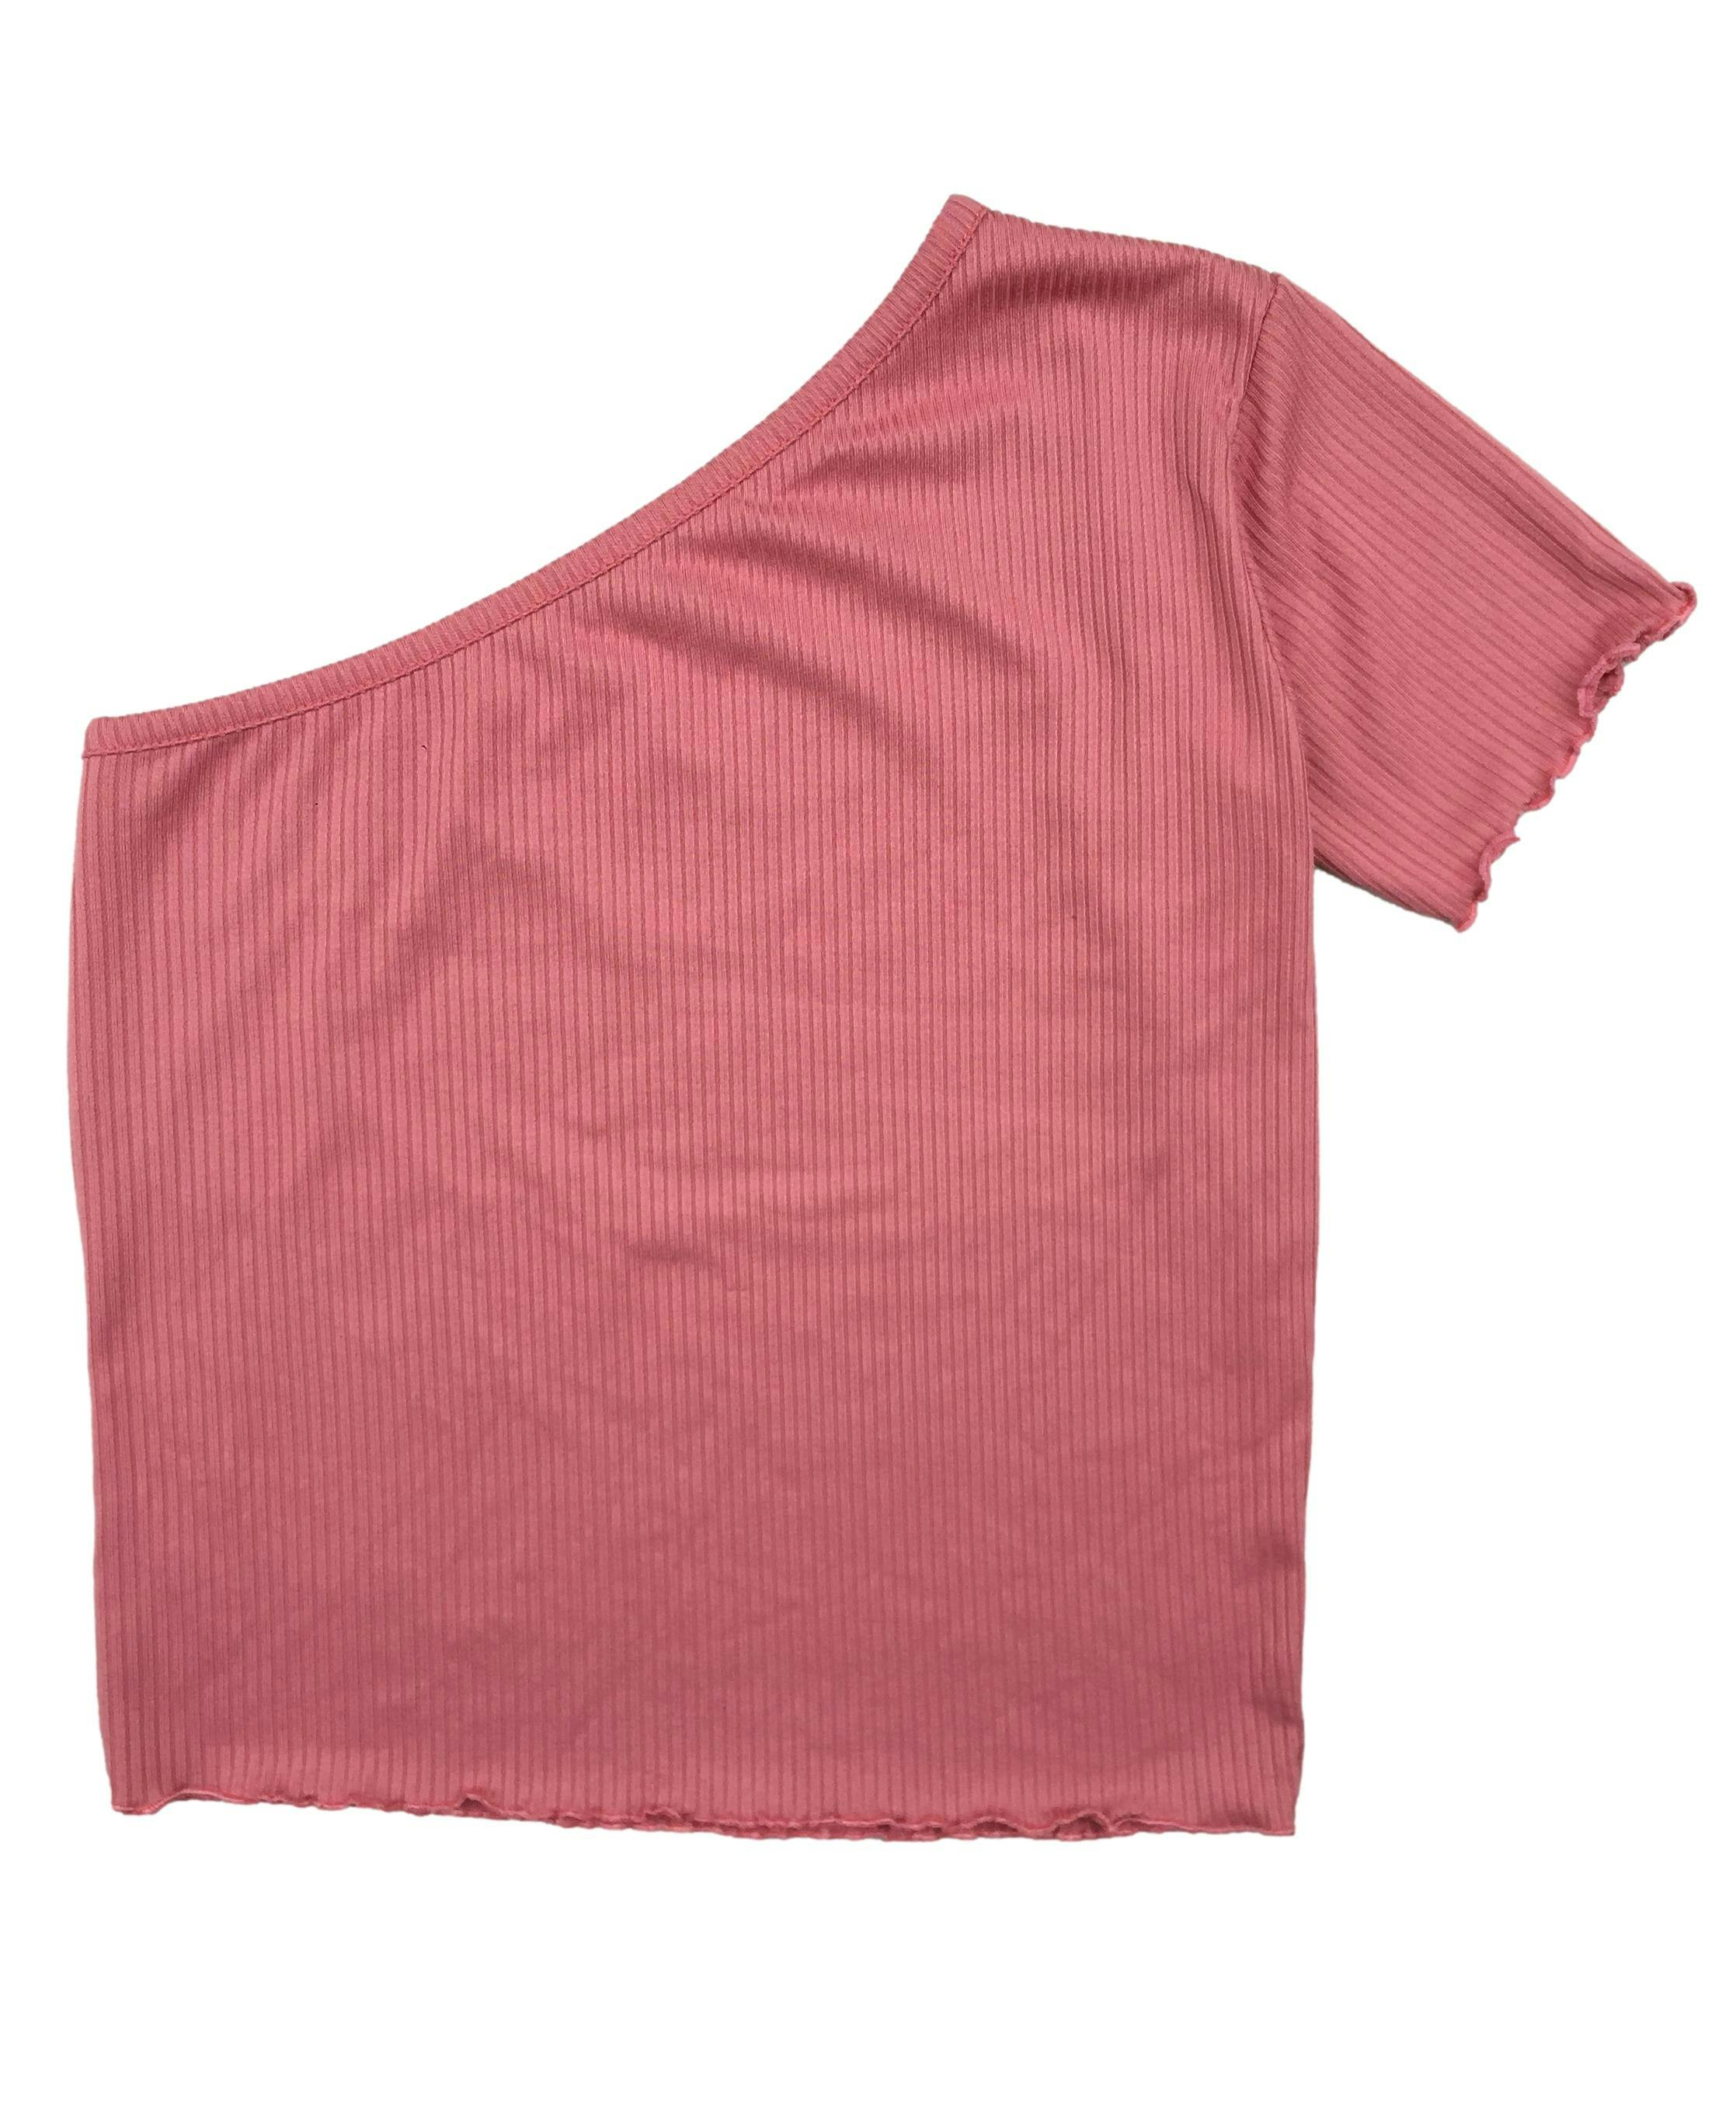 Polito rosado de tejido acanalado, one shoulder. Busto 78 cm sin estirar, Largo 43 cm.